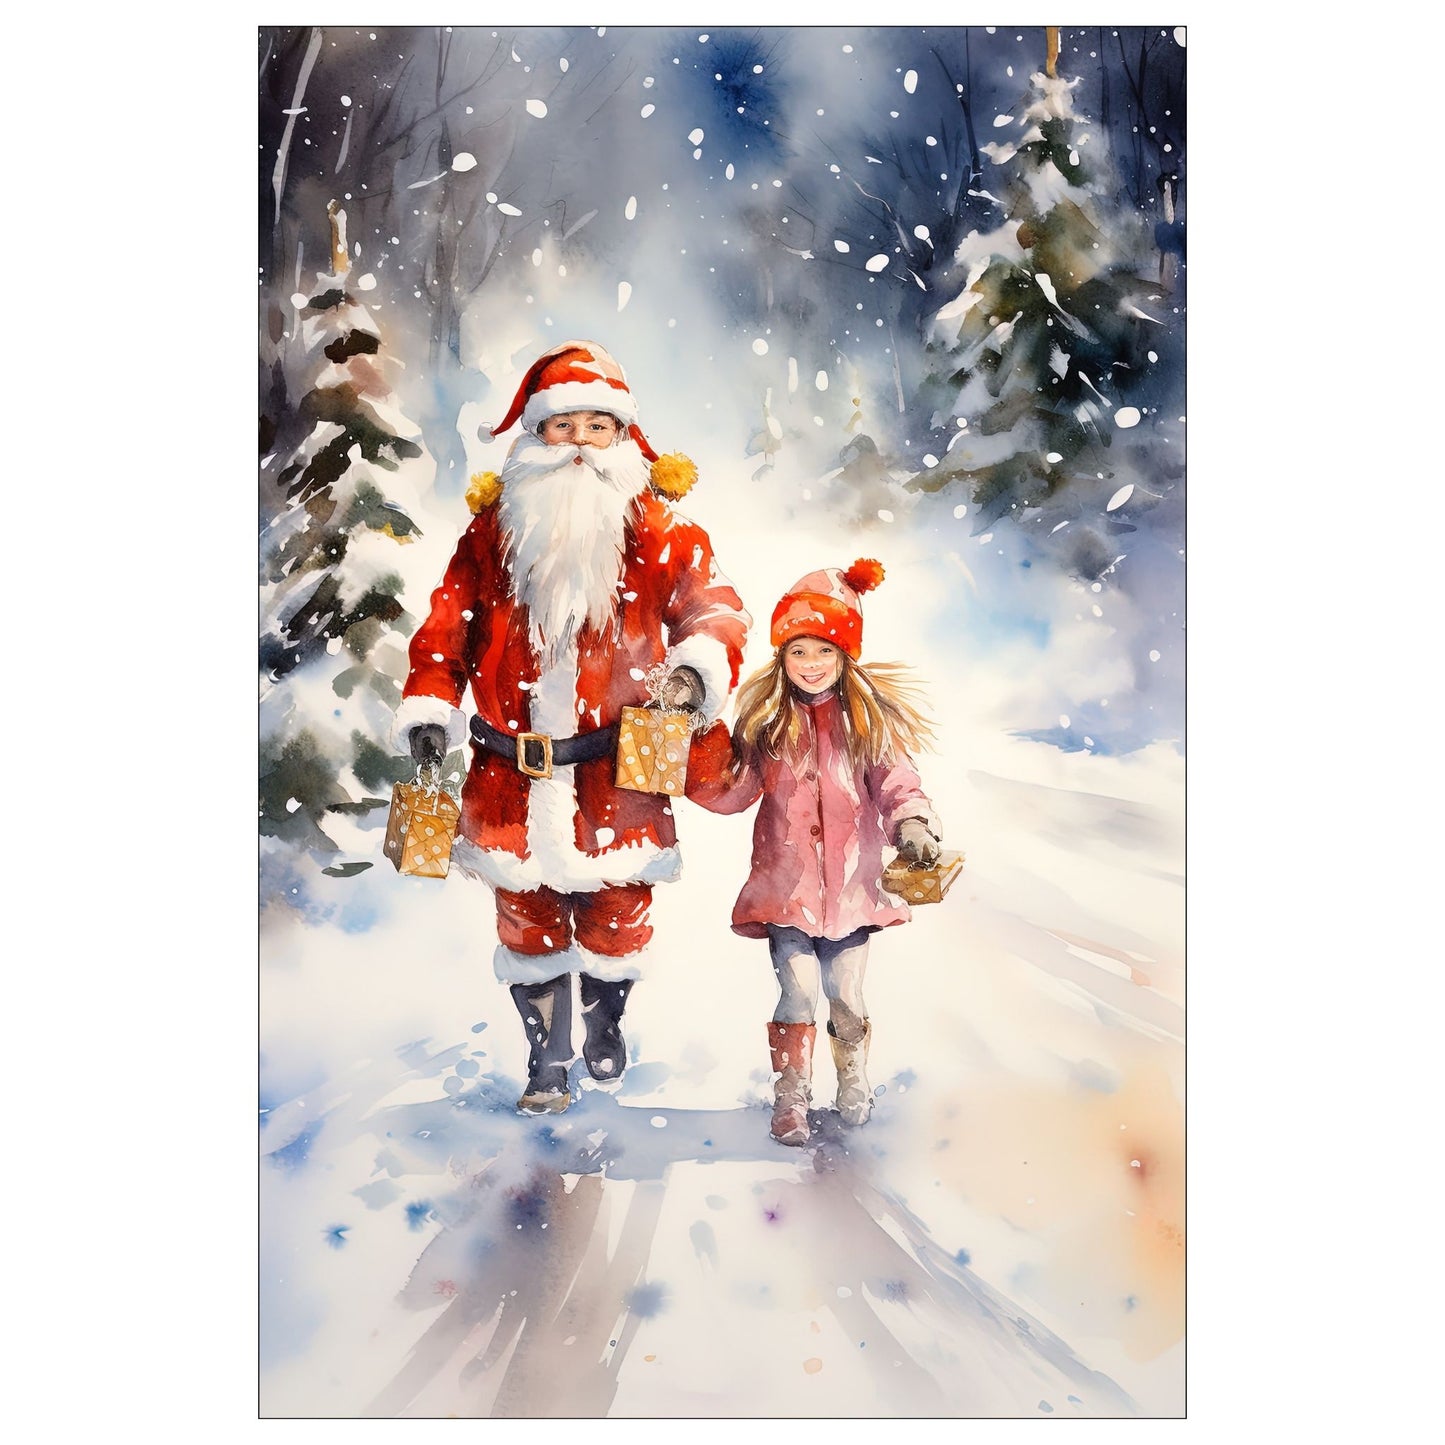 Dekorativt, grafisk julekort av en julenisse og en liten jente som kommer med julepakker. De går ute i snøvær i skogen. Motivet har et nostalgisk preg.